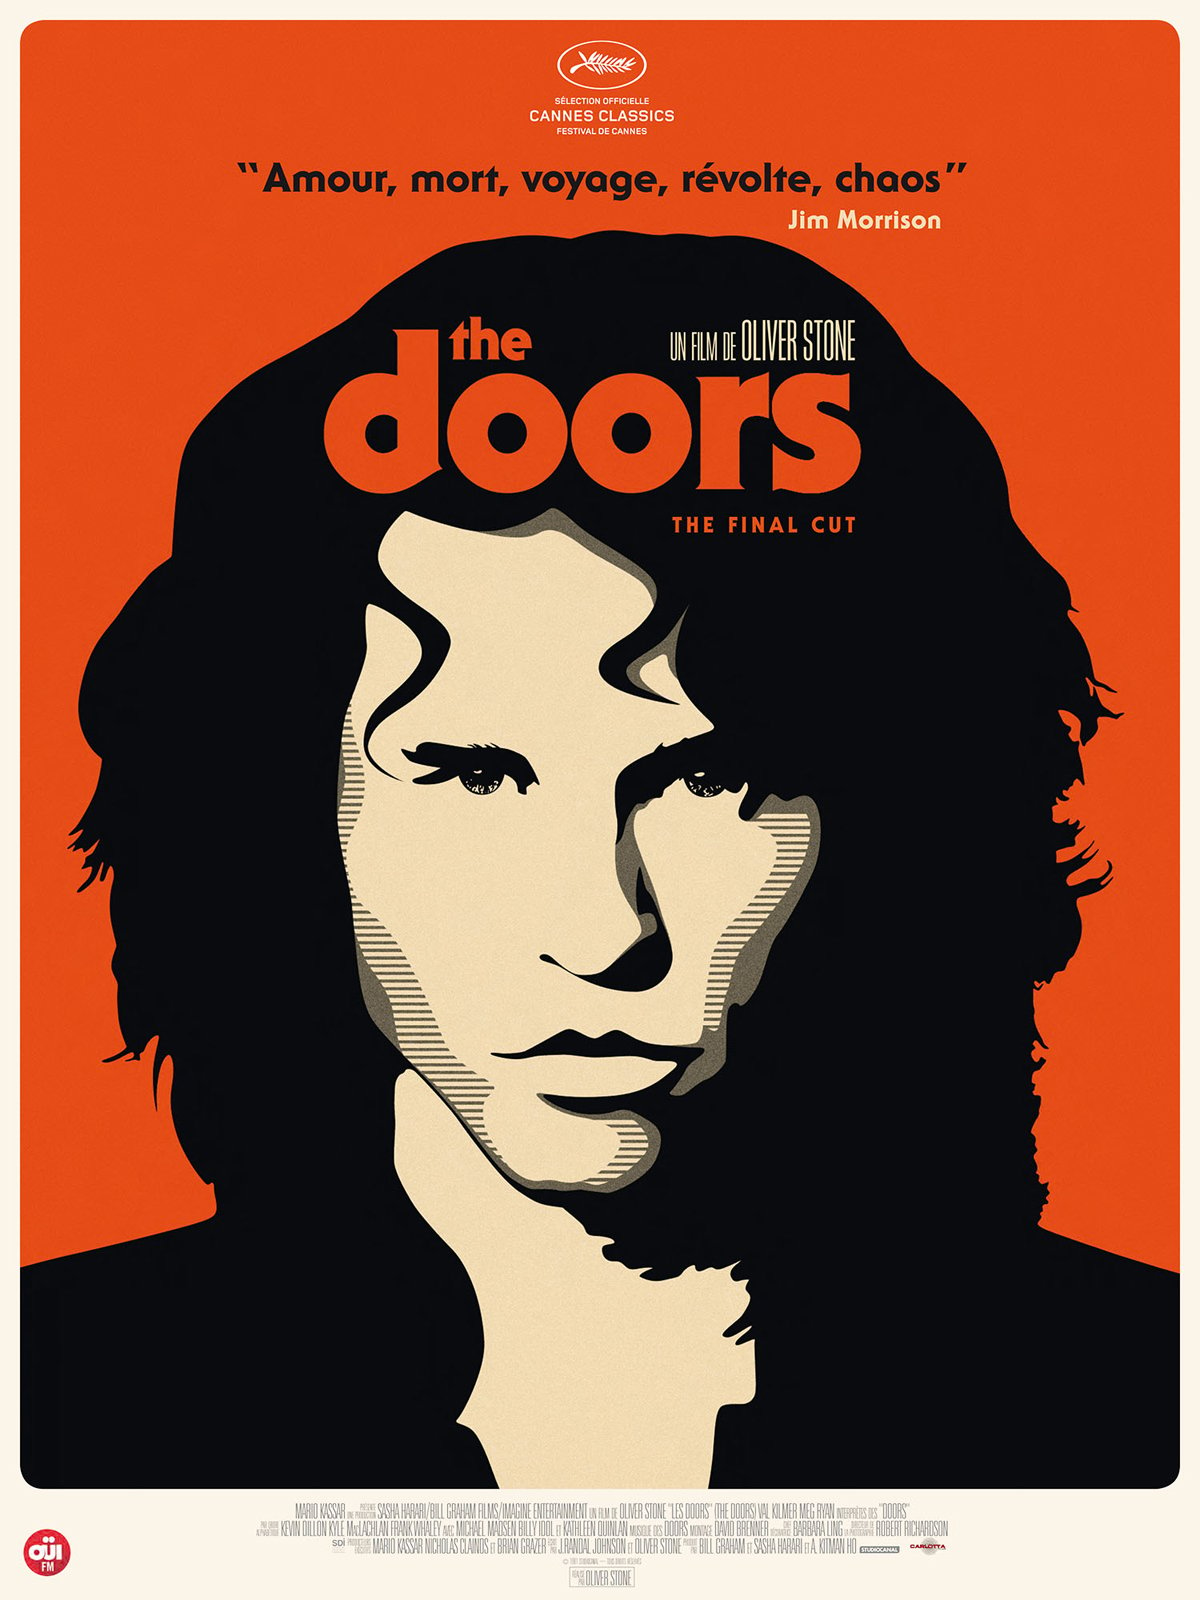 1965. Jim Morrison, qui écrit des poèmes, s'éprend de Pamela Courson. Il lui lit ses écrits influencés par le mysticisme des Indiens, qu'il a découvert durant son enfance au Nouveau-Mexique. La sensibilité des poèmes de Morrison impressionne Ray Manzarek et, bientôt, un groupe musical se forme…